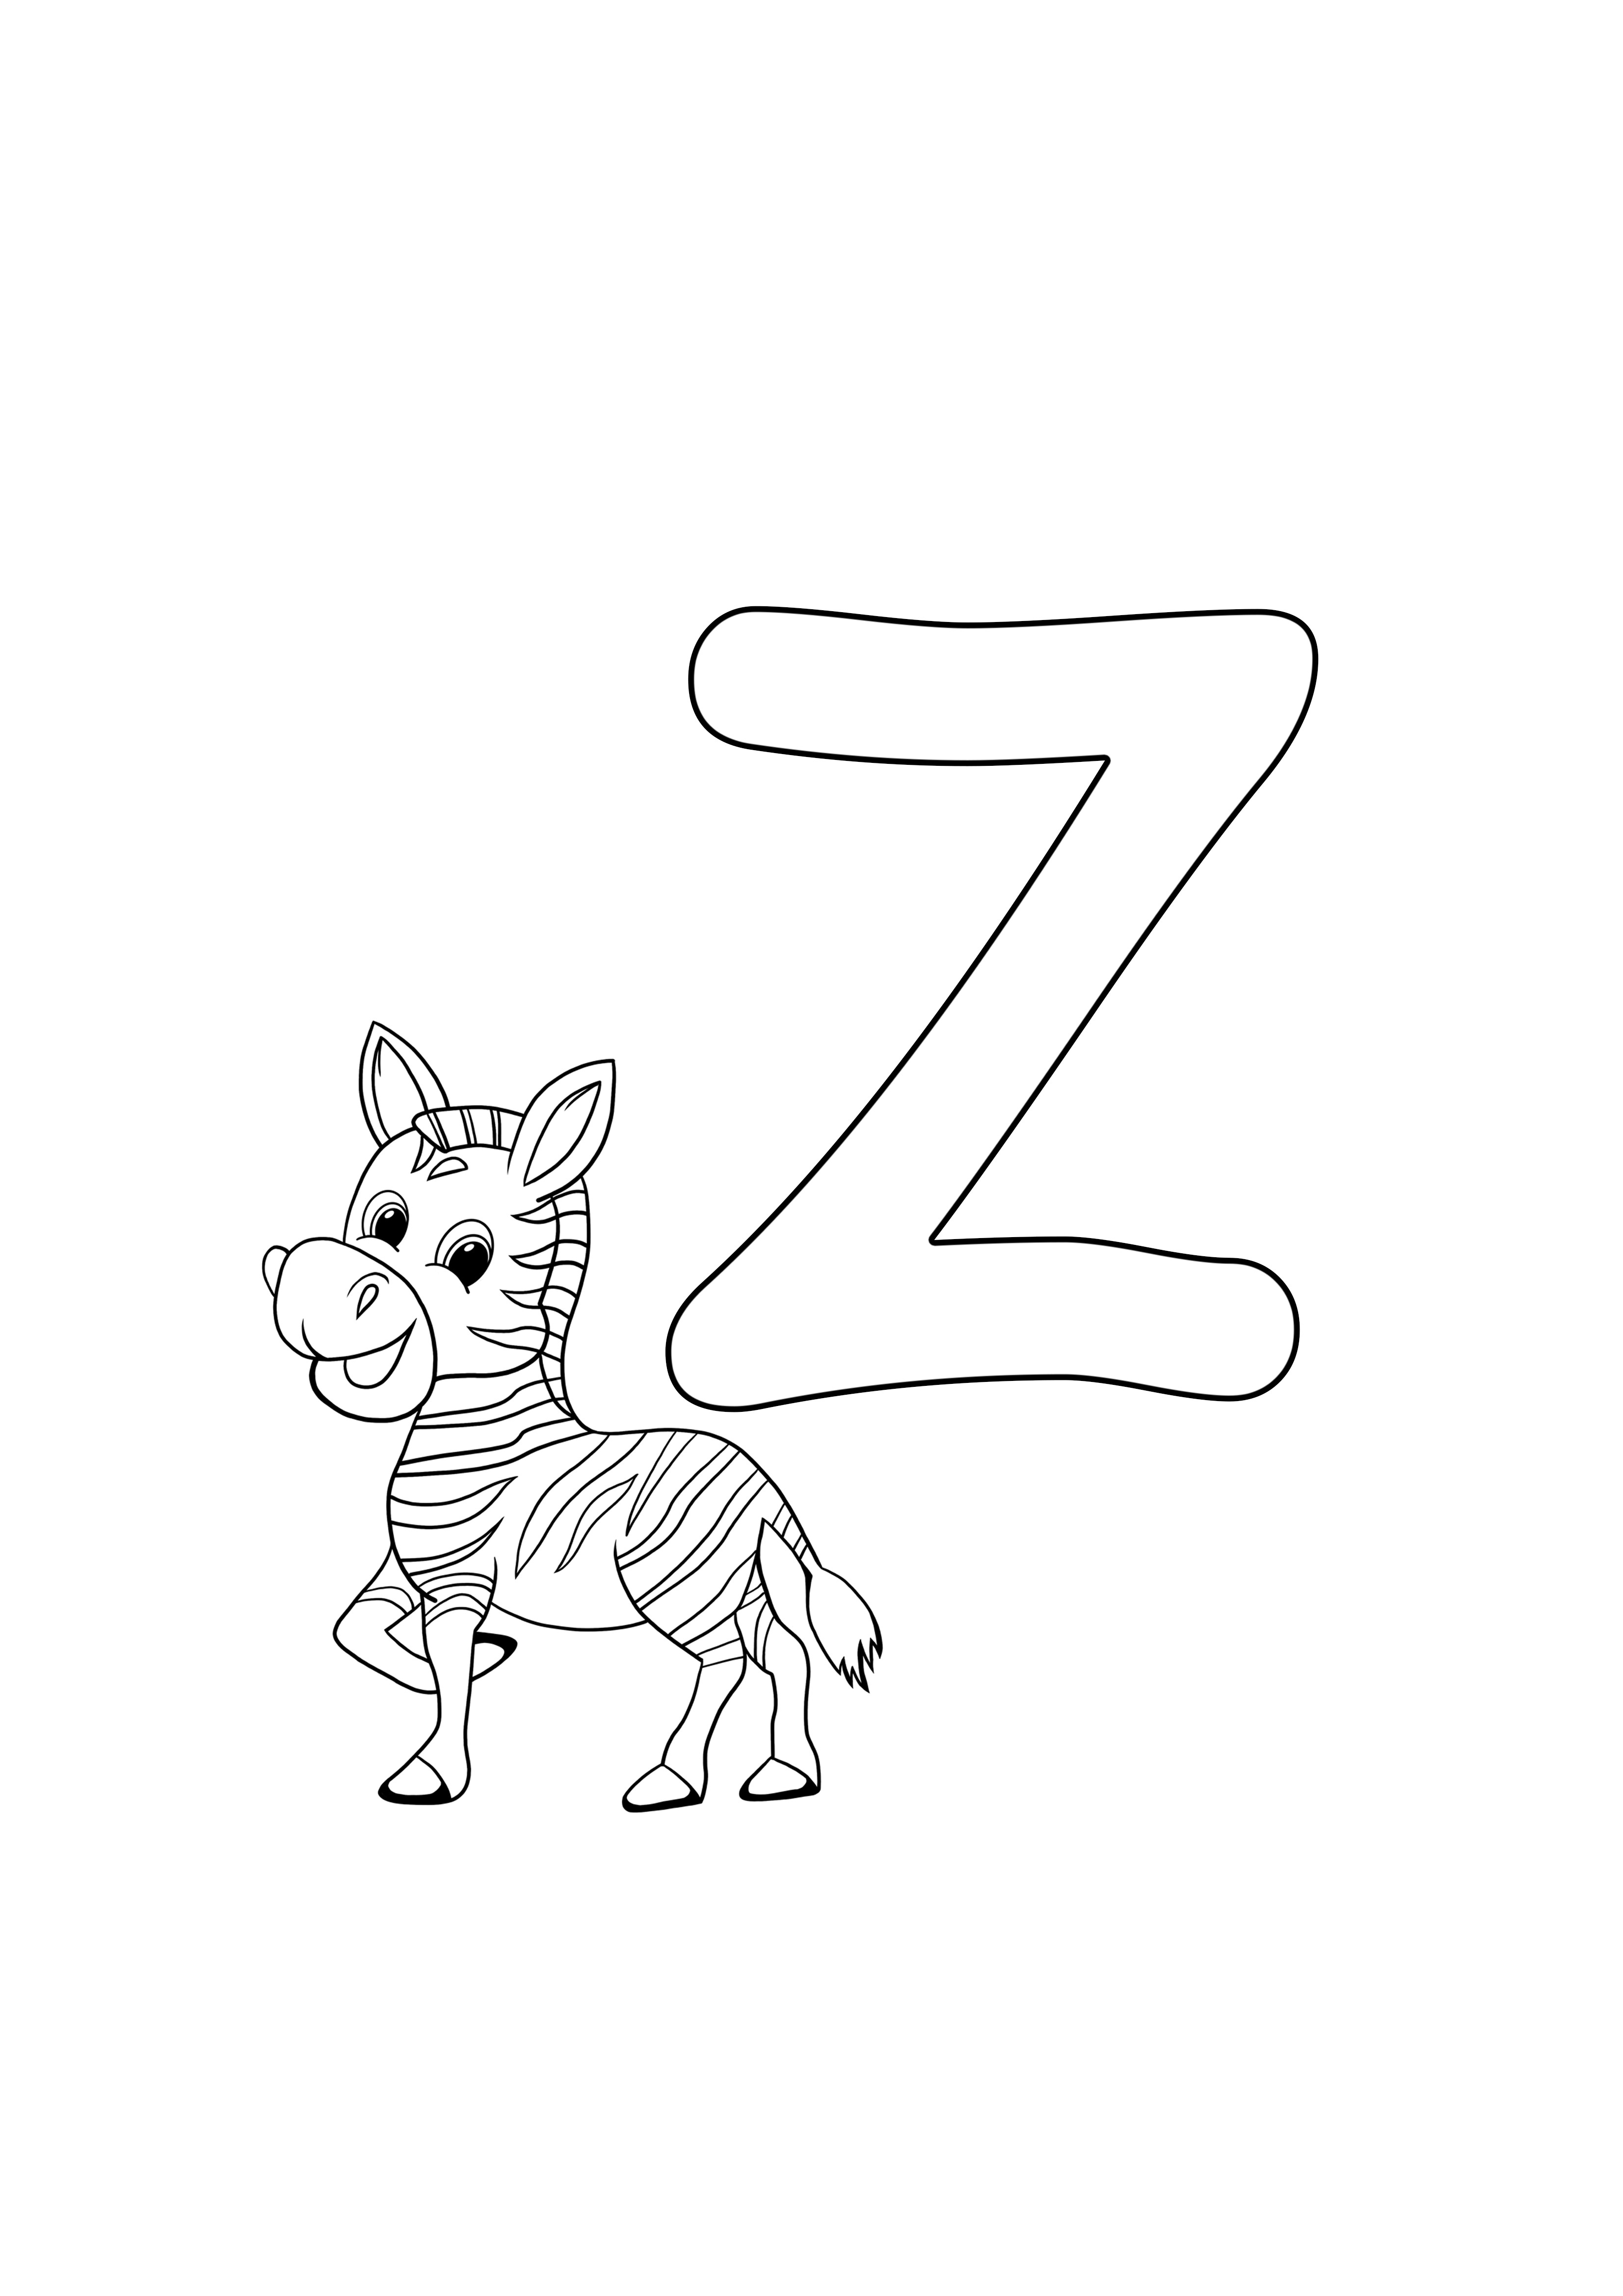 z est pour zebra gratuit à imprimer, gratuit à colorier